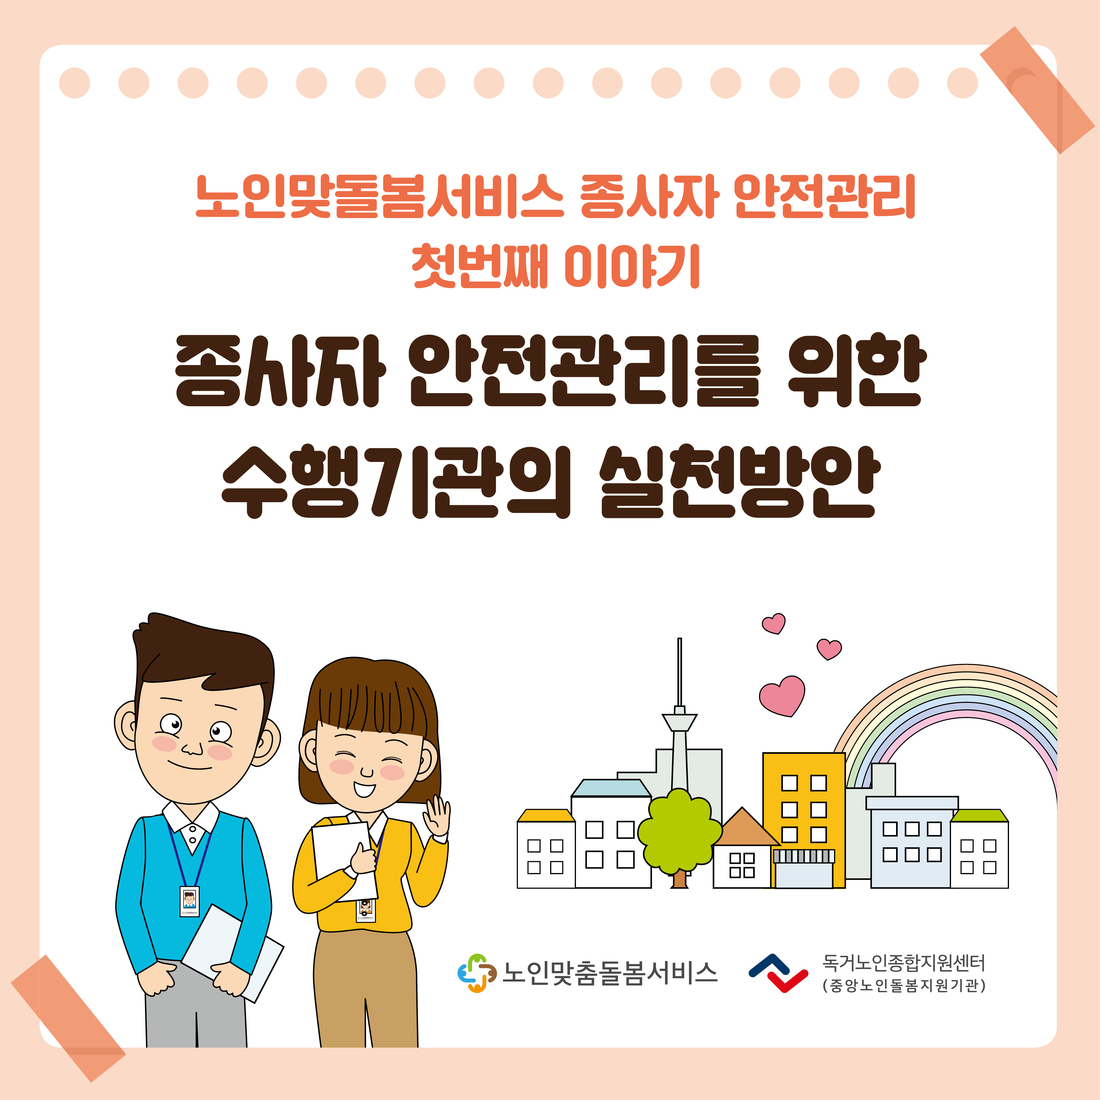 종사자 안전관리 카드뉴스 1월 '수행기관의 안전관리 실천방안'